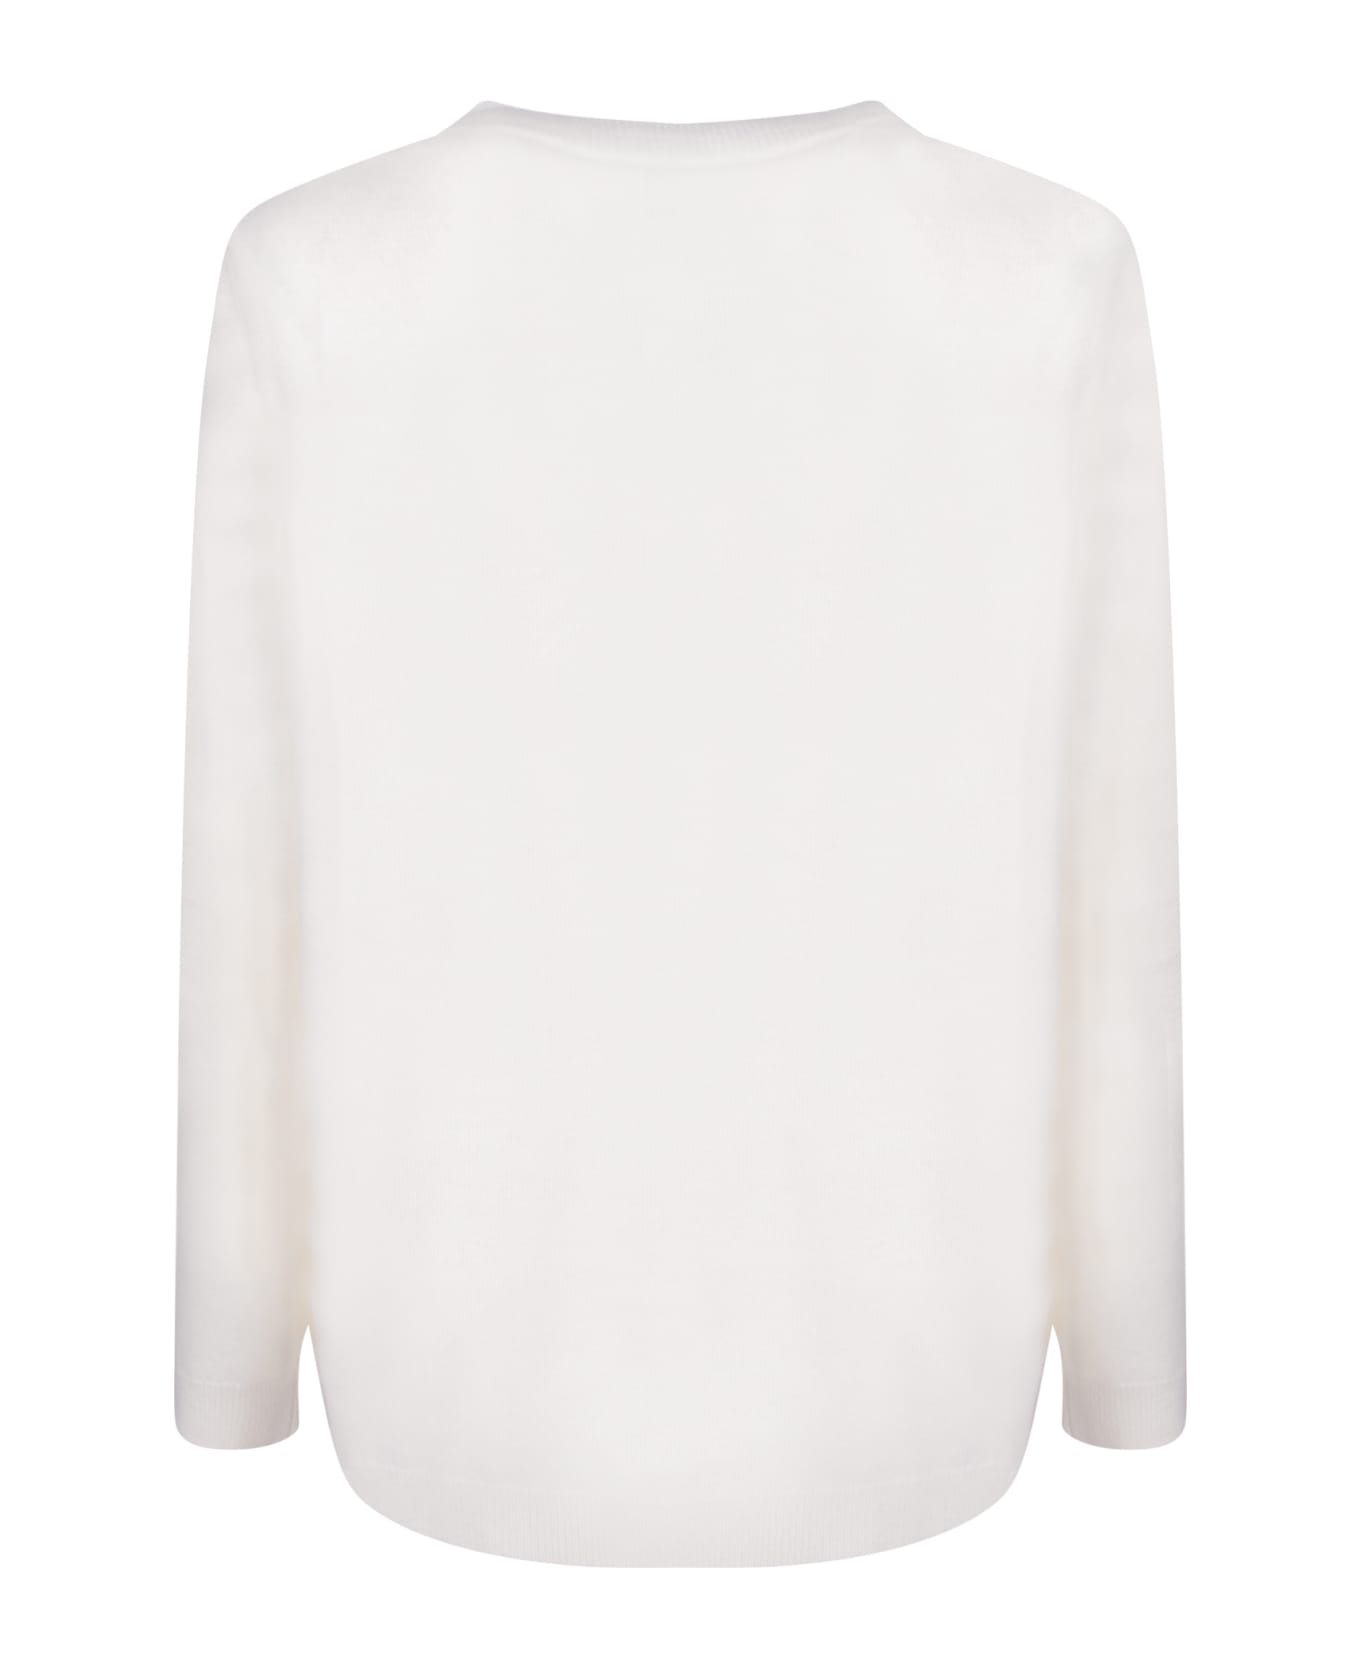 Fabiana Filippi Premium Yarn White Sweater - White ニットウェア